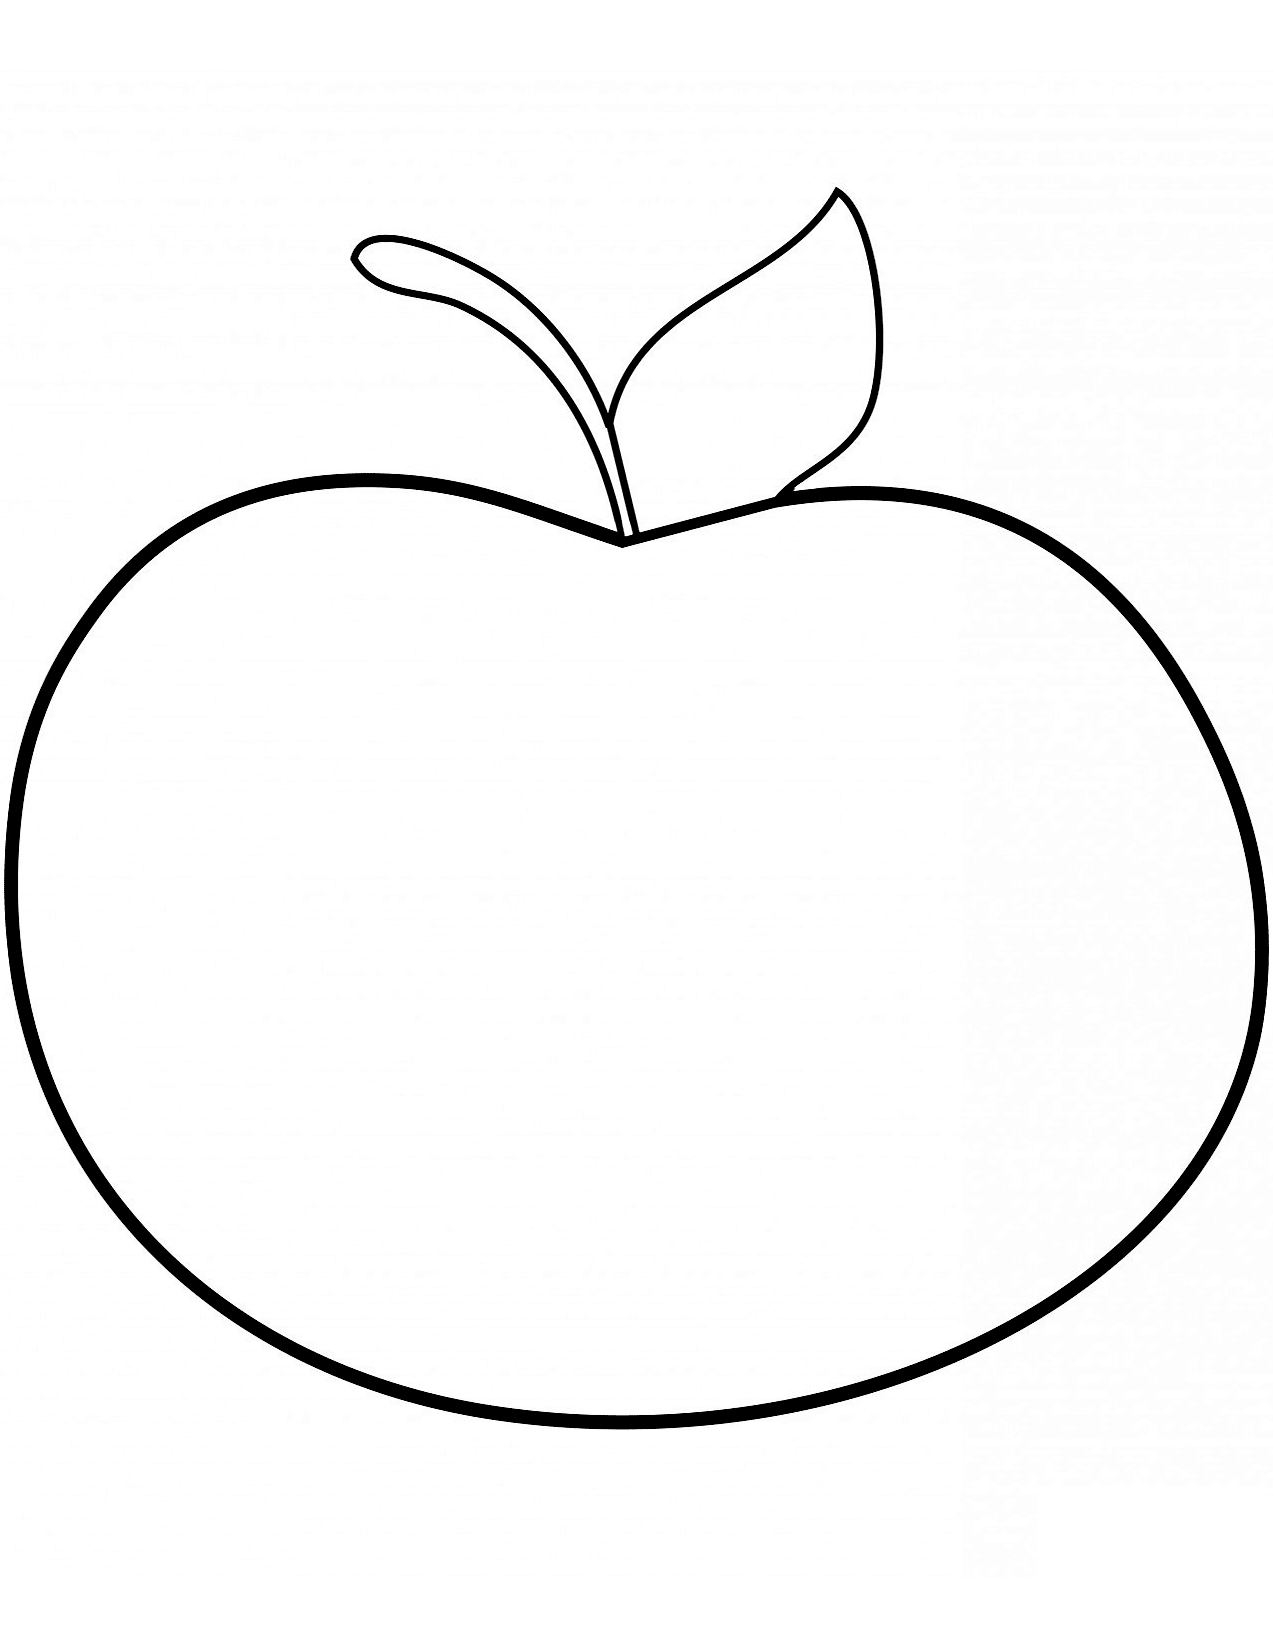 Disegno mela 20 di mele da stampare e colorare